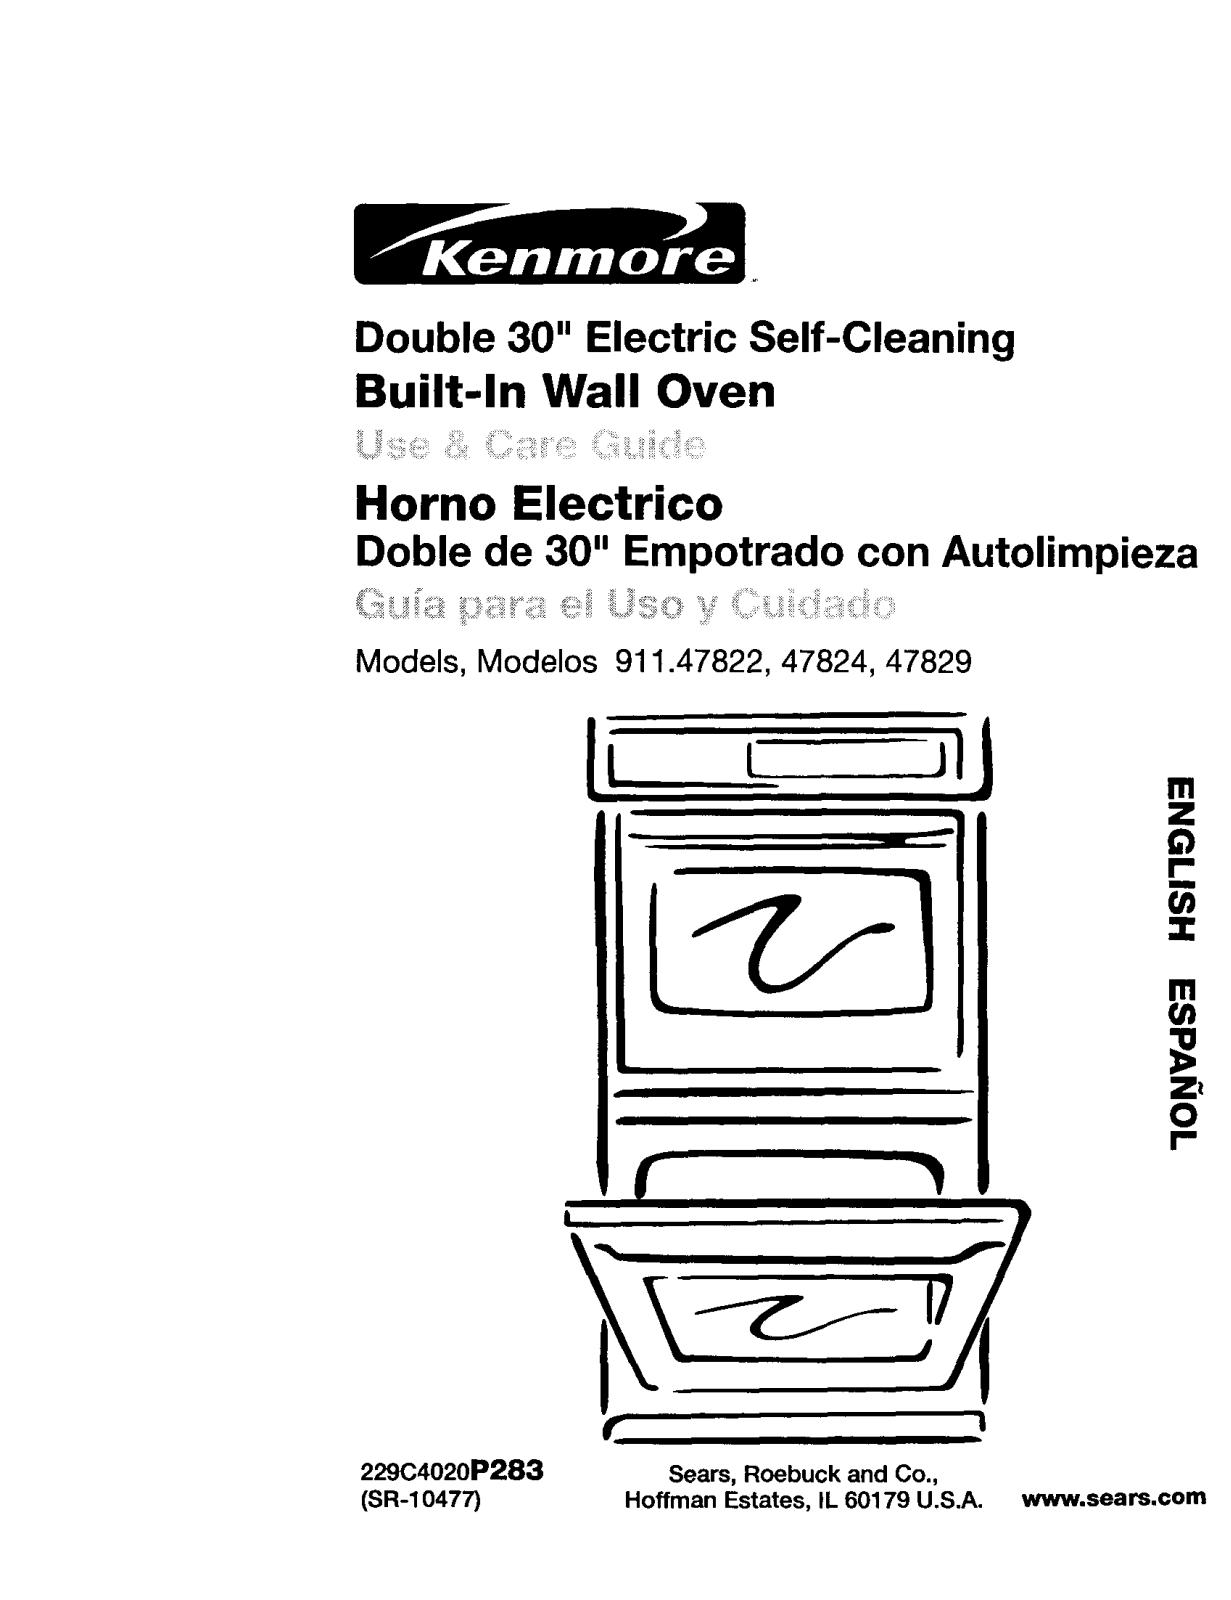 Kenmore 91147822100, 91147824100, 91147829100 Owner’s Manual